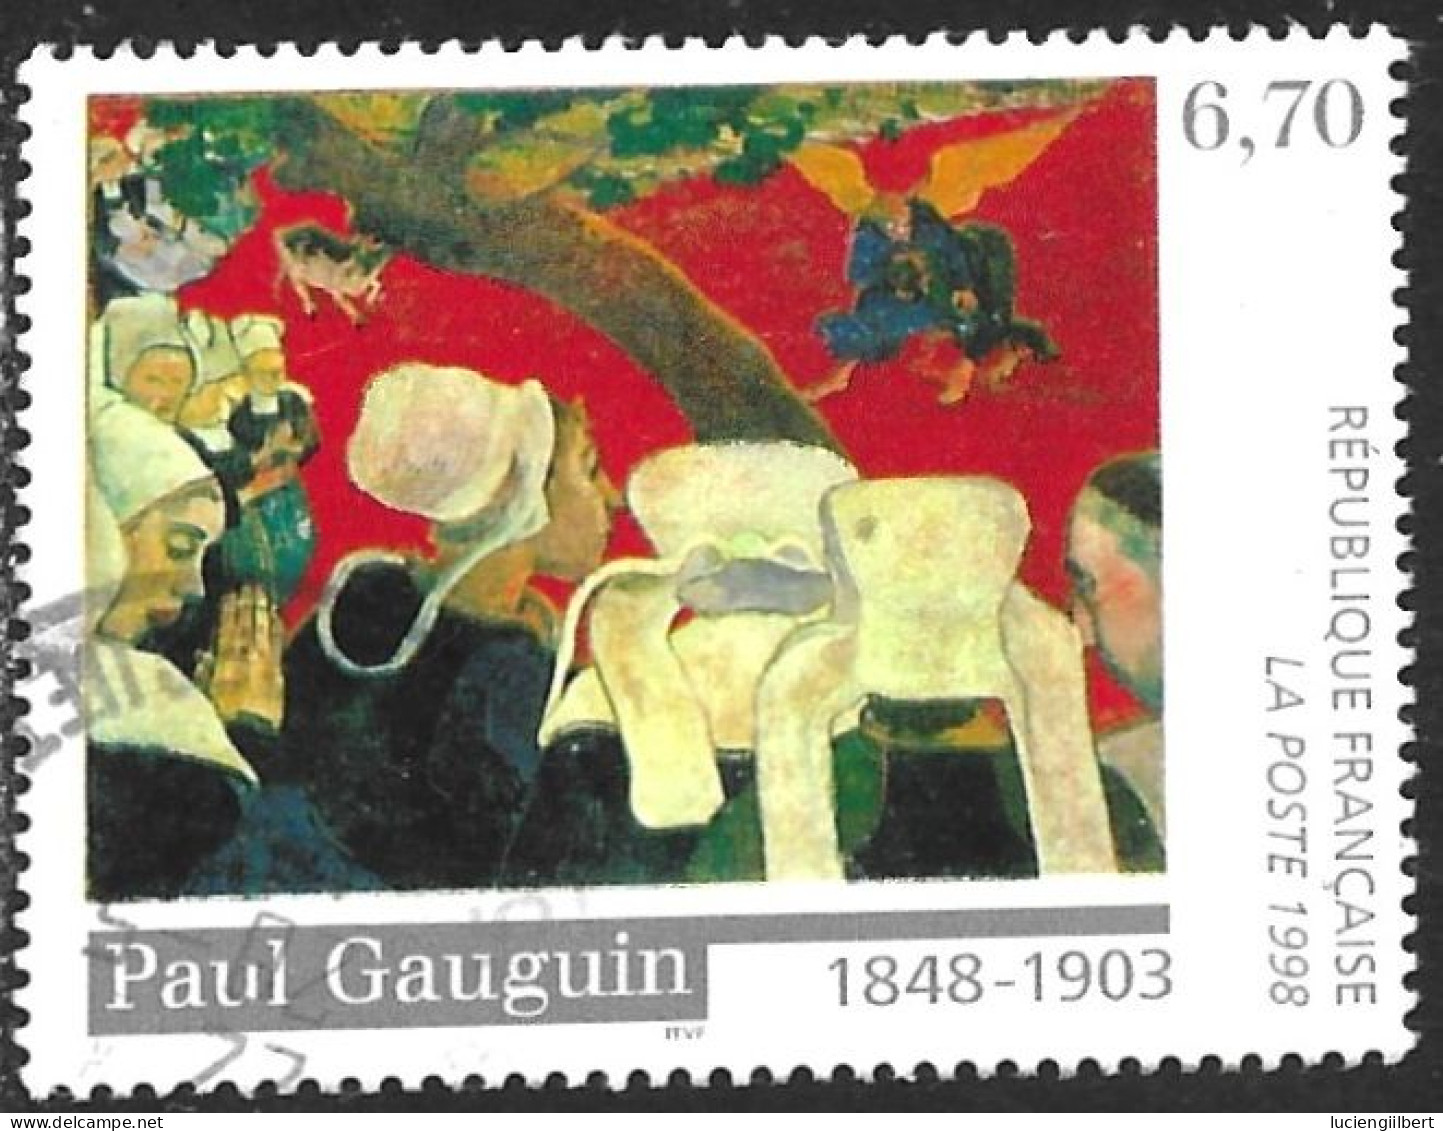 TIMBRE N° 3207  -  TABLEAU GAUGUIN  -  OBLITERE  -  1998 - Oblitérés